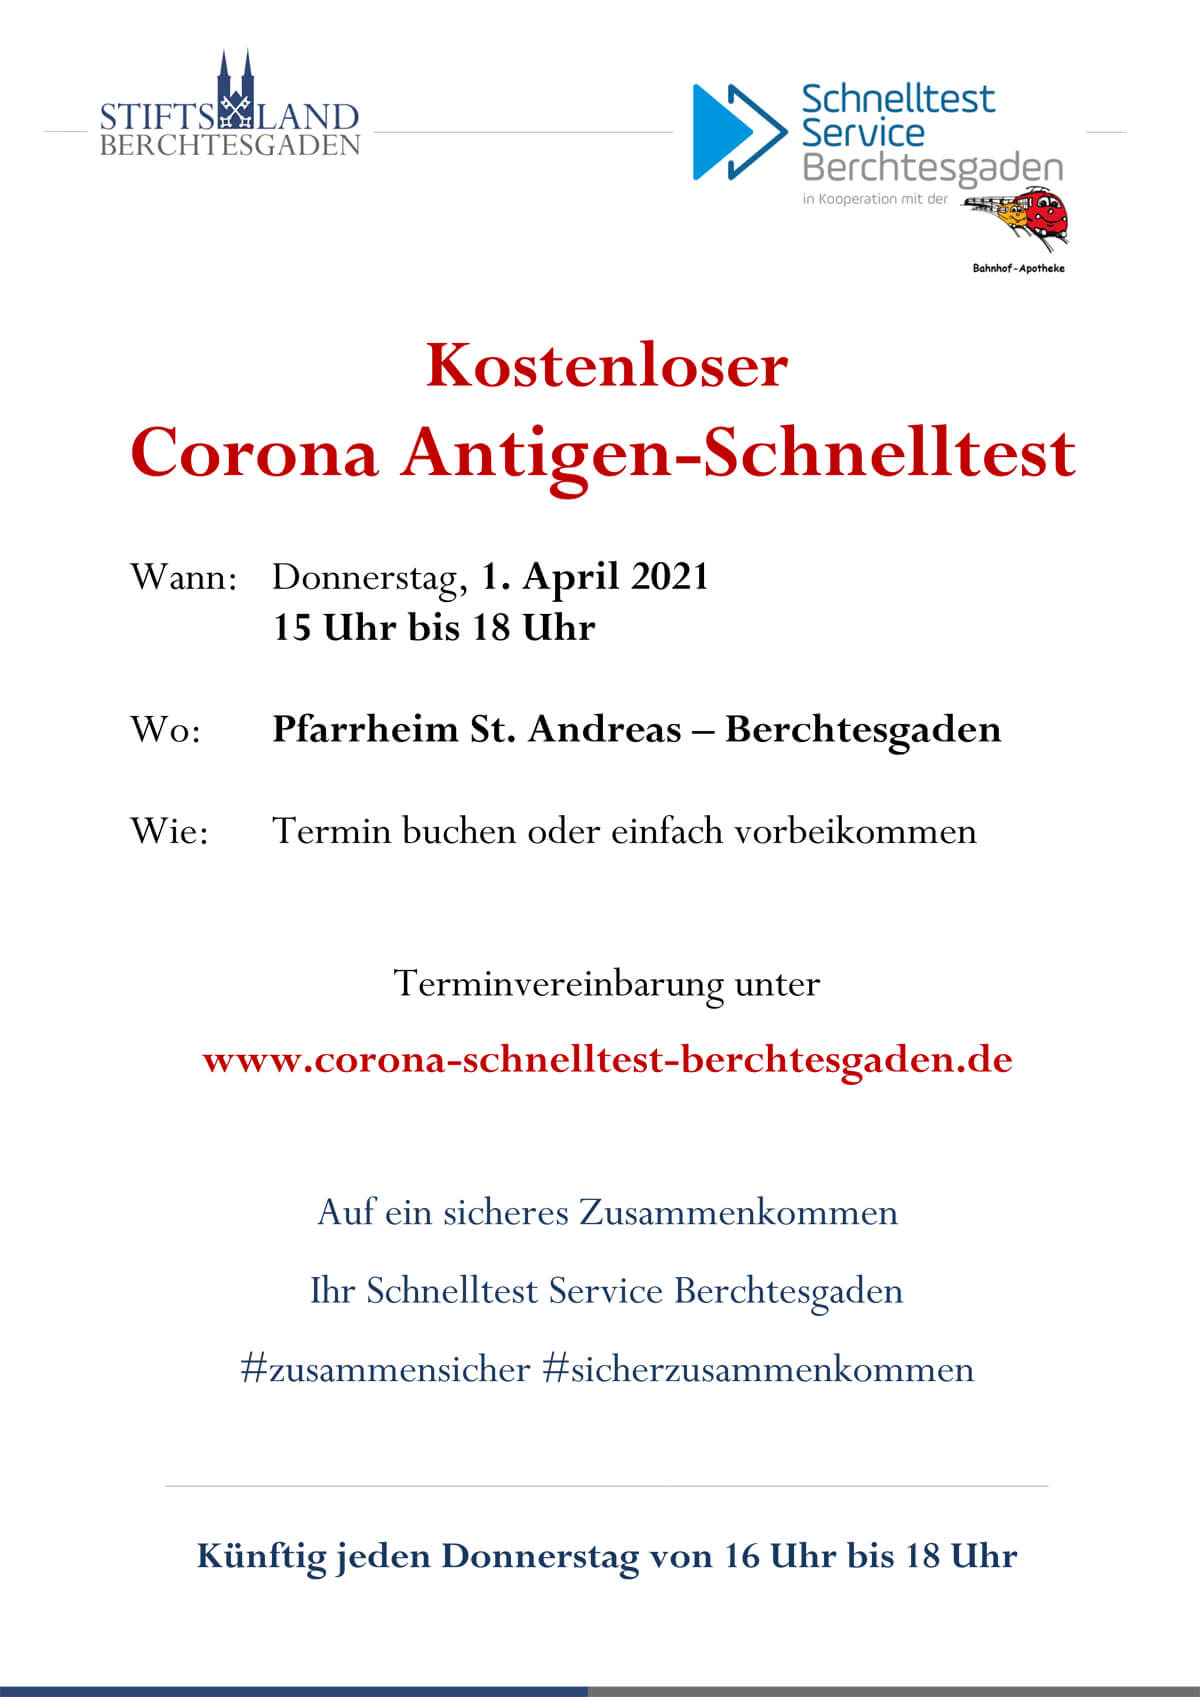 Info zum Corona Antigen Schnelltest im Pfarrheim Berchtesgaden